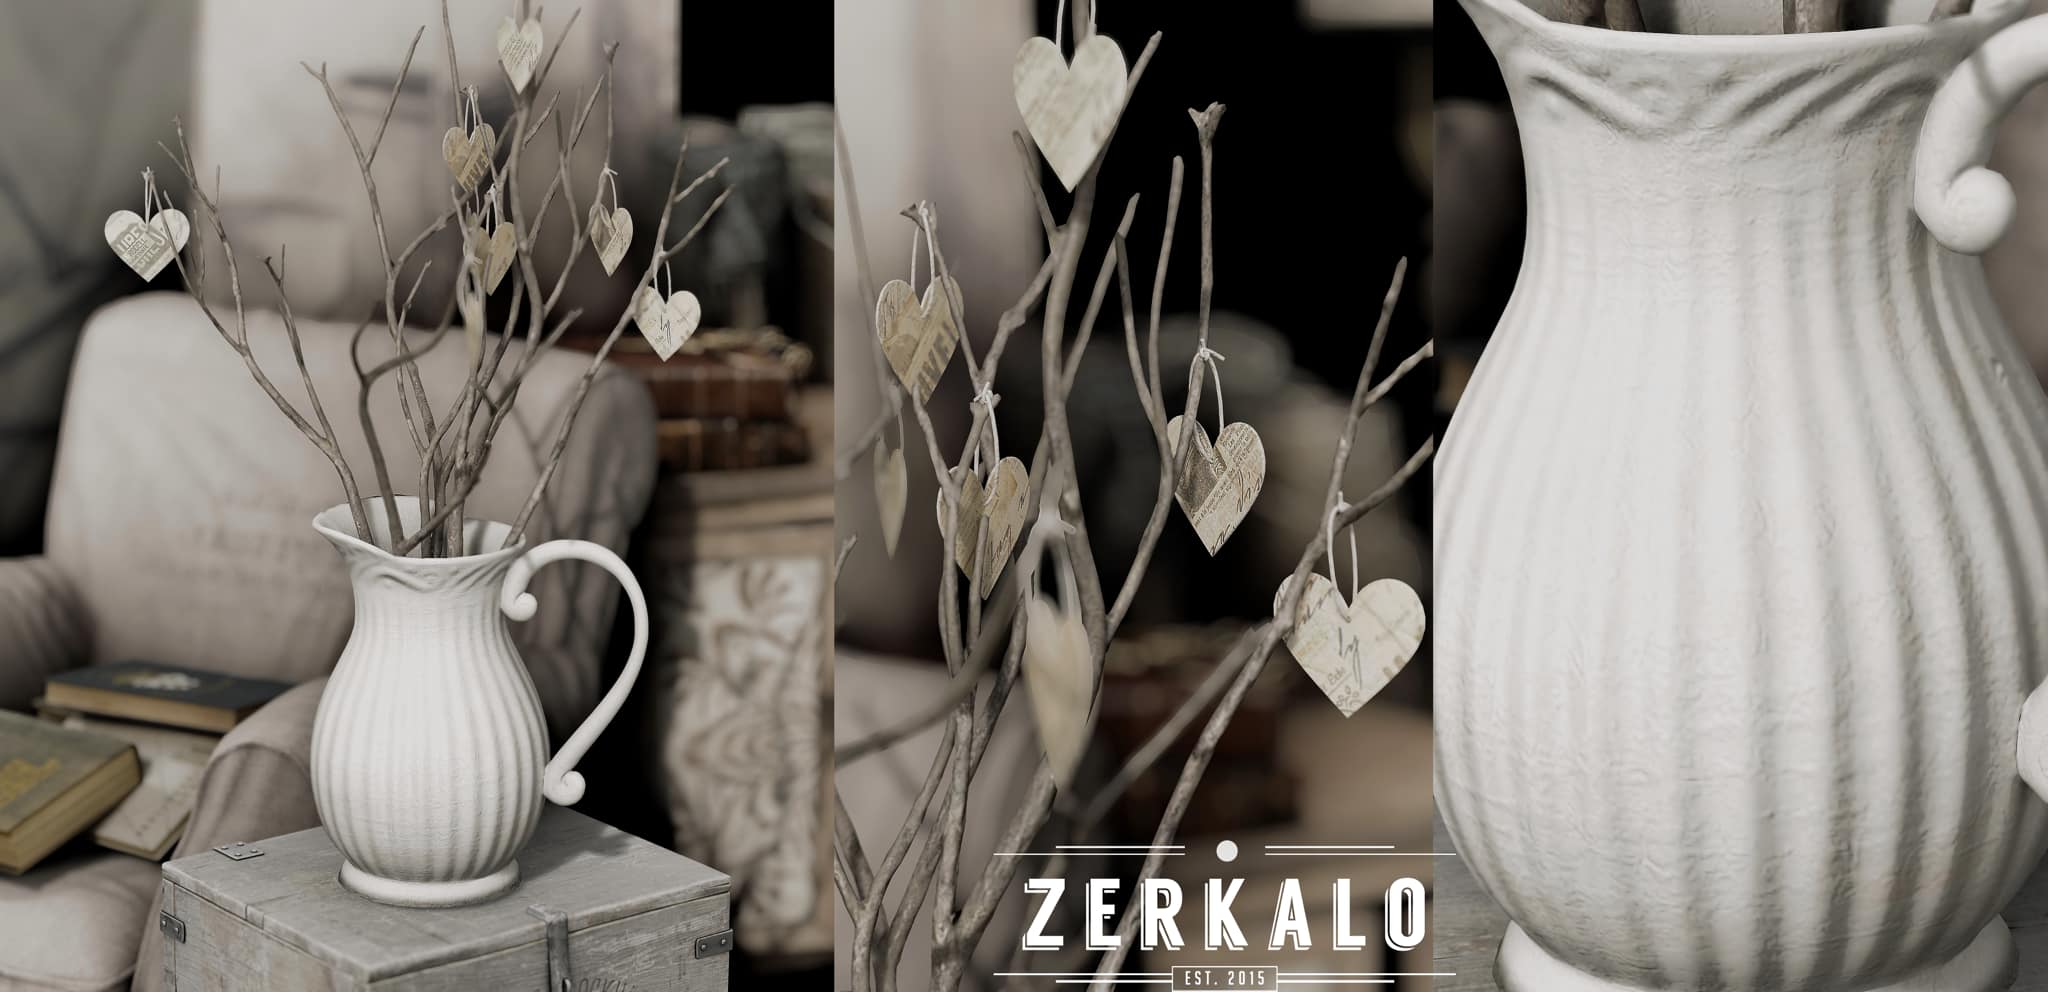 Zerkalo – Aurora Hearts Vase